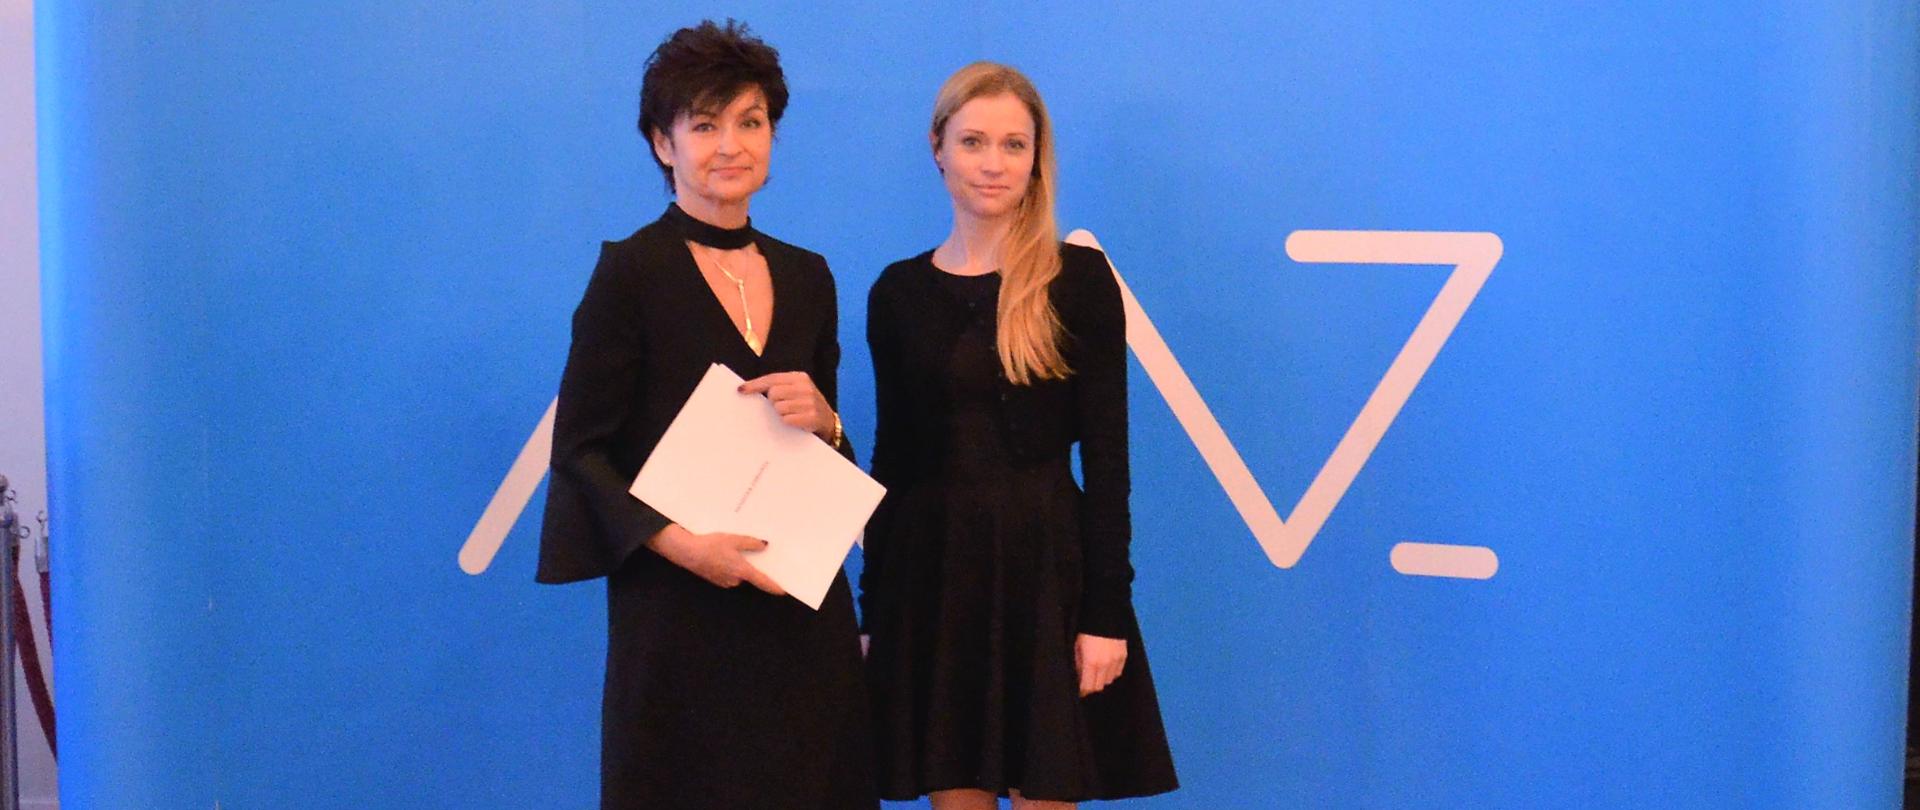 Anna Goławska, zastępca dyrektora Departamentu Funduszy Europejskich i e-Zdrowia oraz Renata Kiempa, prezes szpitala w Miastku pozują do zdjęcia z podpisaną umową na tle niebieskiej ścianki Ministerstwa Zdrowia.